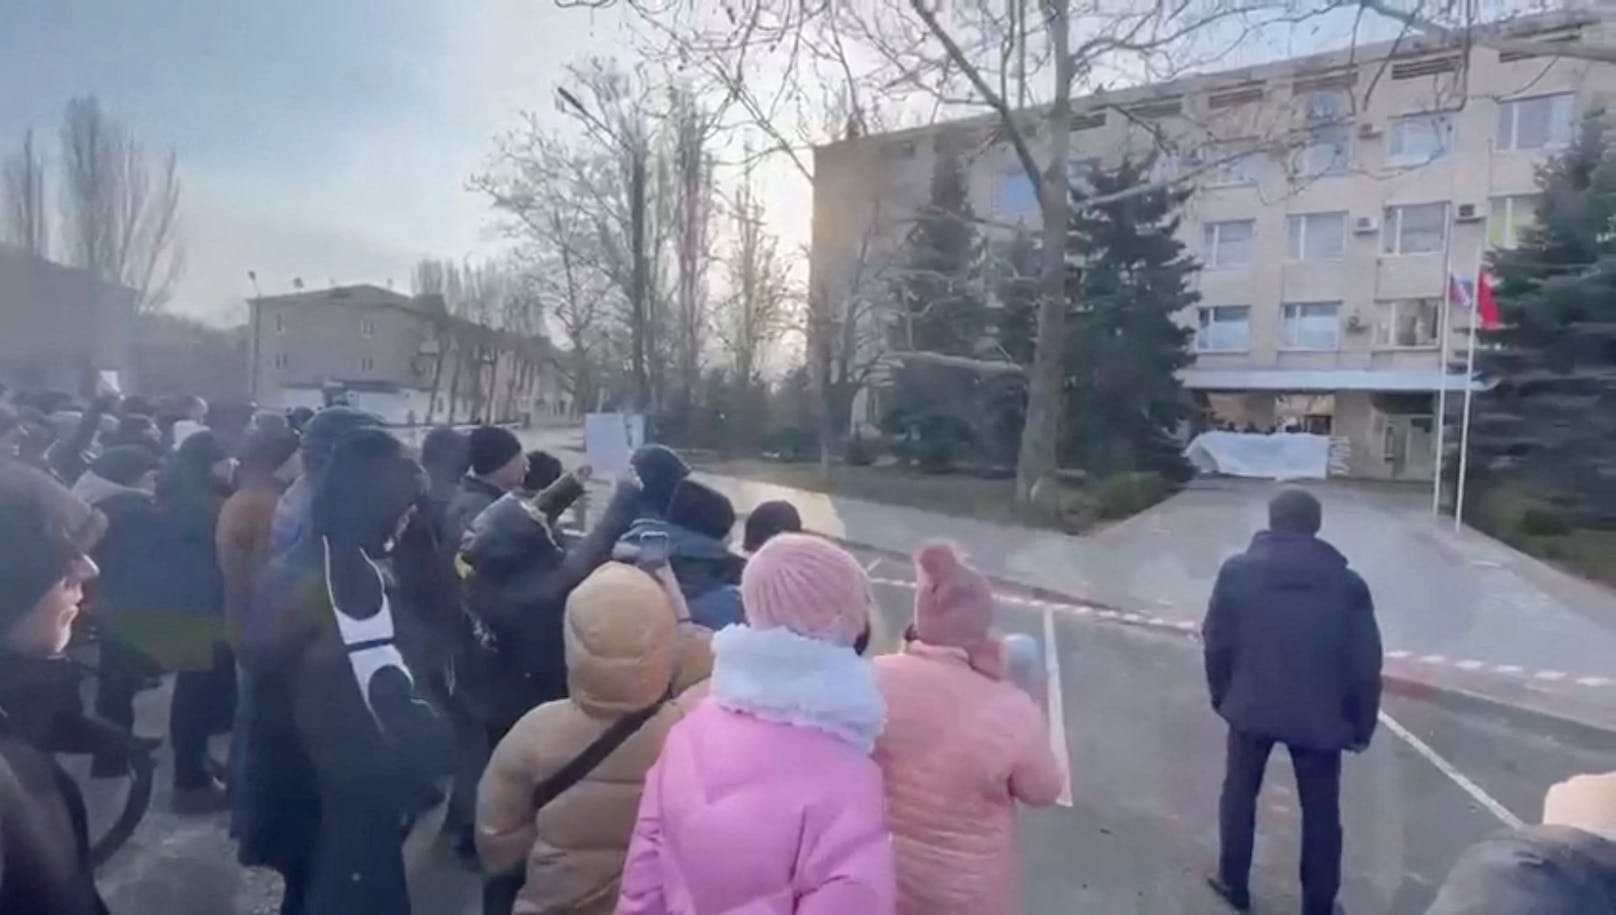 Melitopols Bürger gingen nach der Entführung ihres Stadtchefs auf die Straßen, um für seine Freilassung zu demonstrieren.